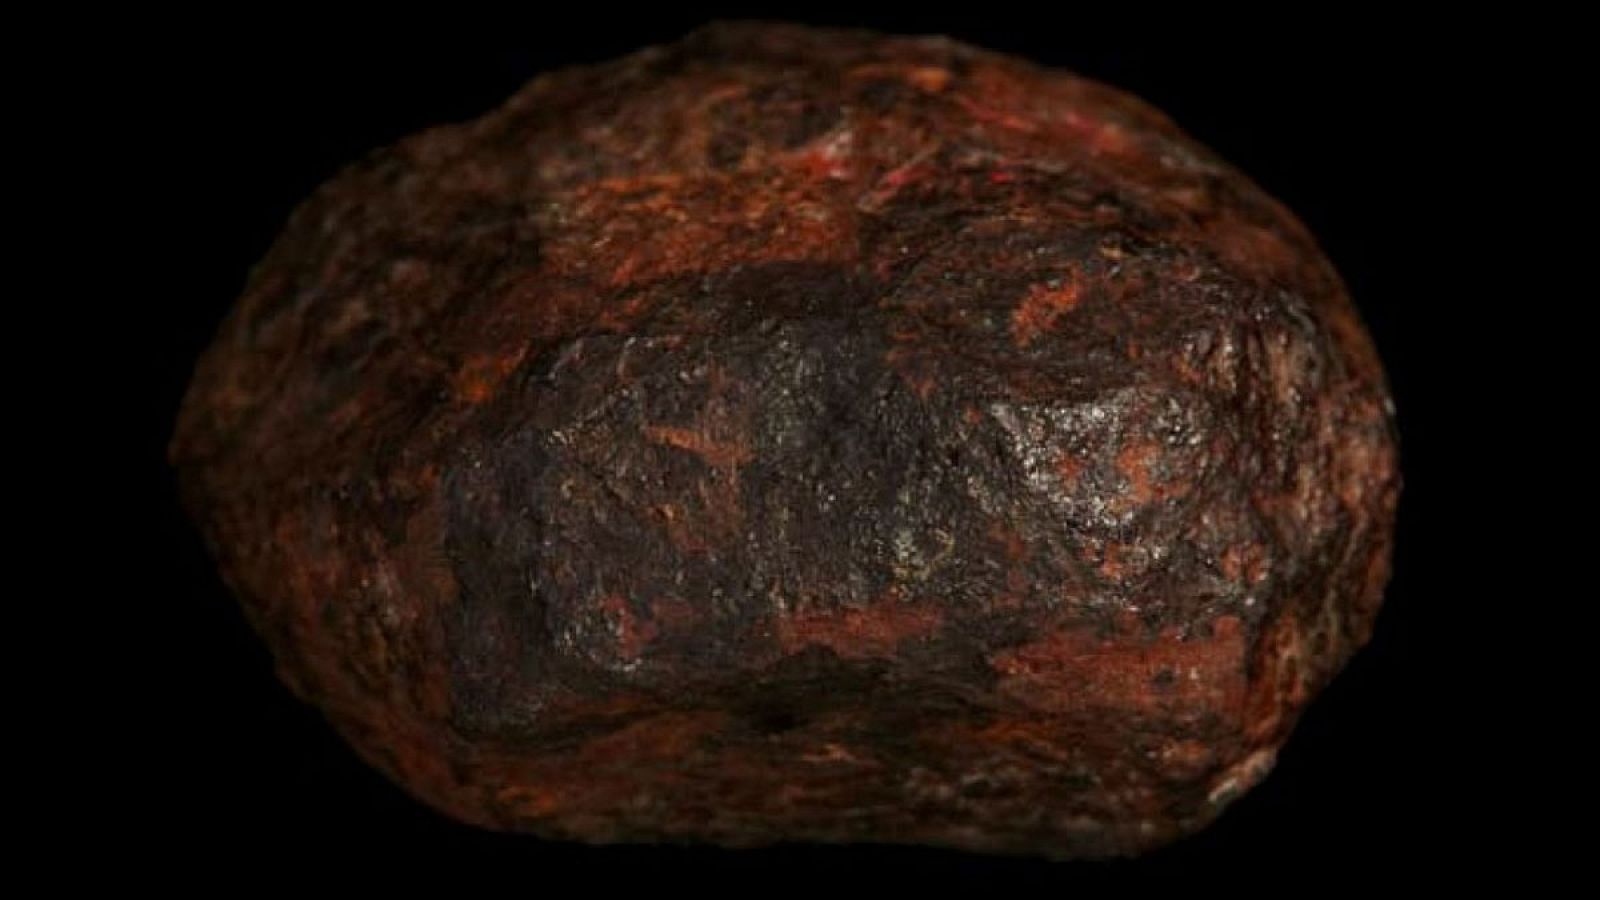 El mineral se descubrió tras un examen del meteorito Wedderburn, hallado en Wedderburn (Australia) en 1951.